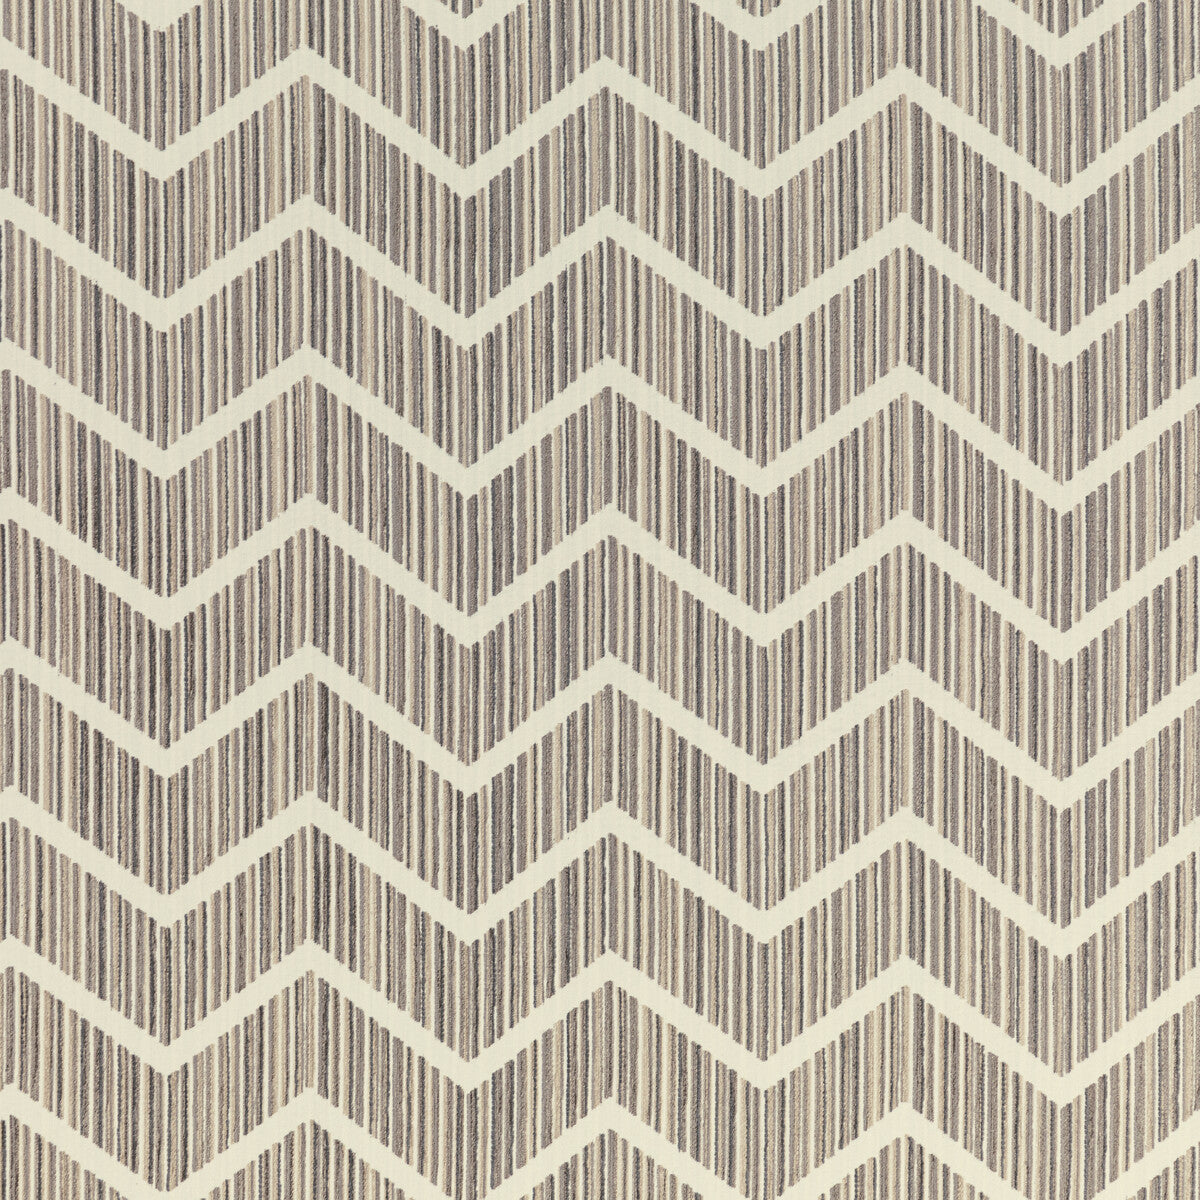 Kravet Design fabric in 36270-1611 color - pattern 36270.1611.0 - by Kravet Design